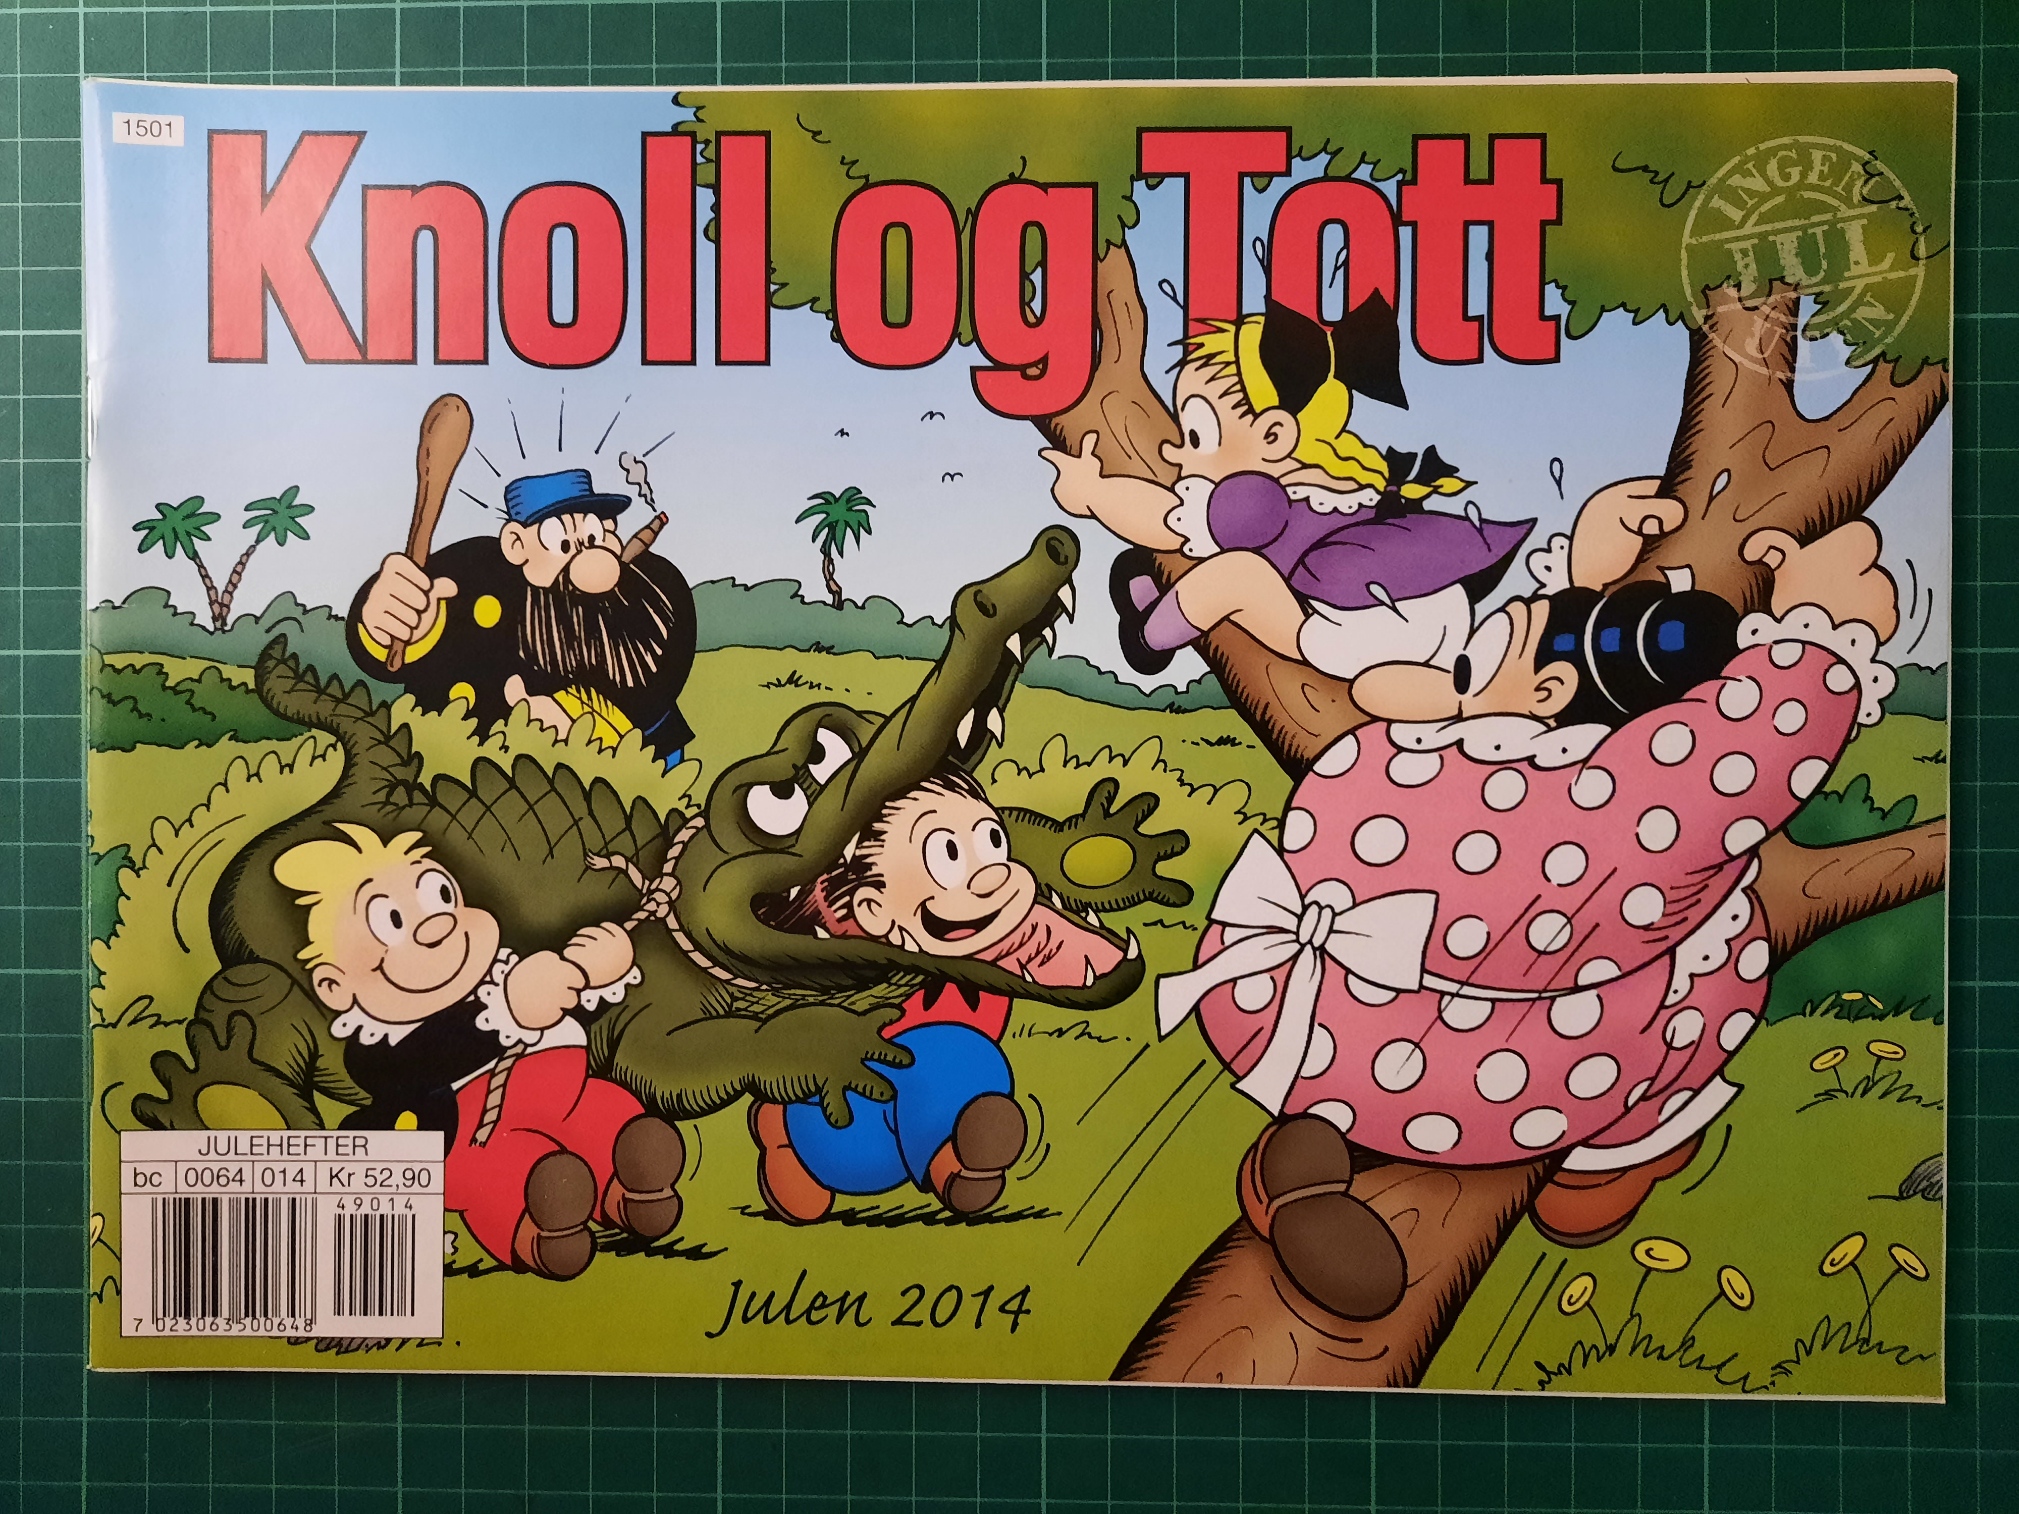 Knoll og Tott 2014